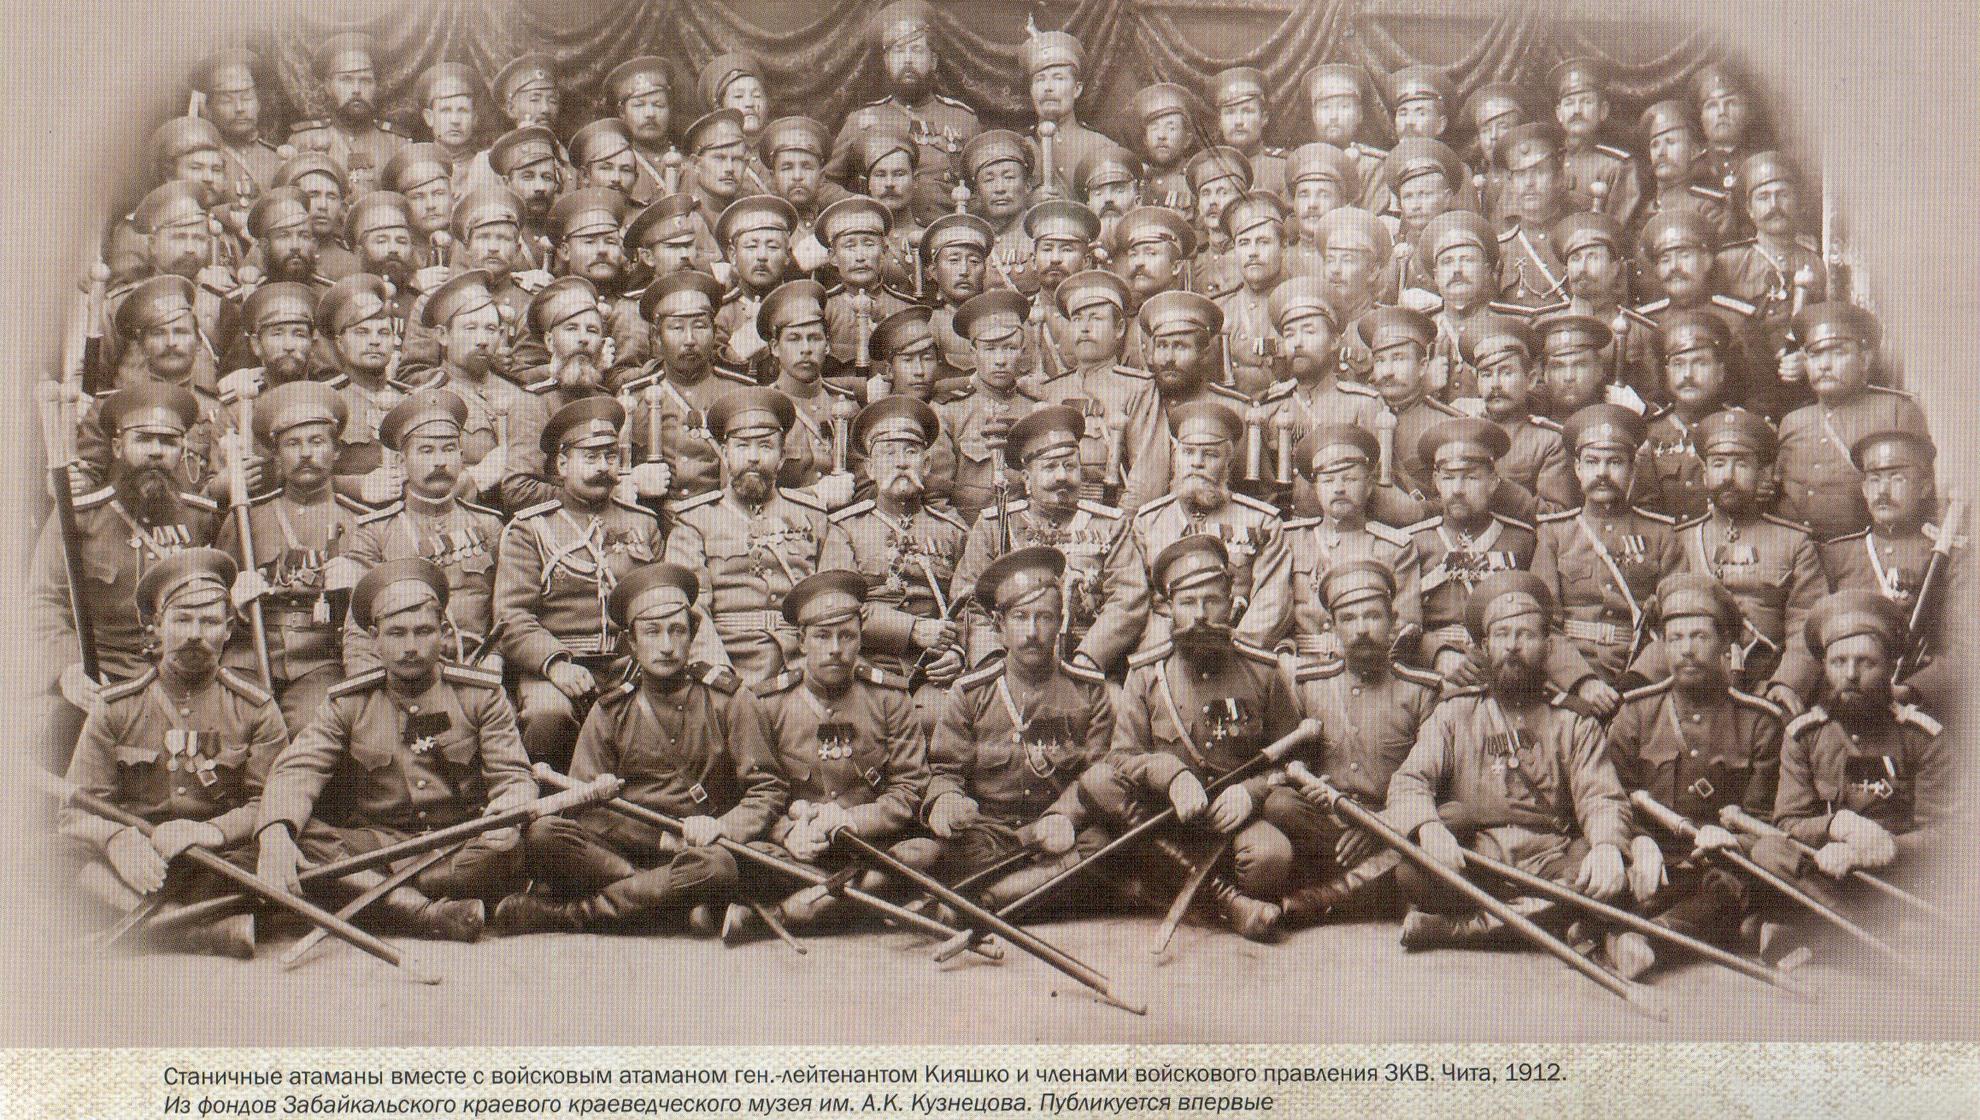 11 й восточно сибирский стрелковый полк